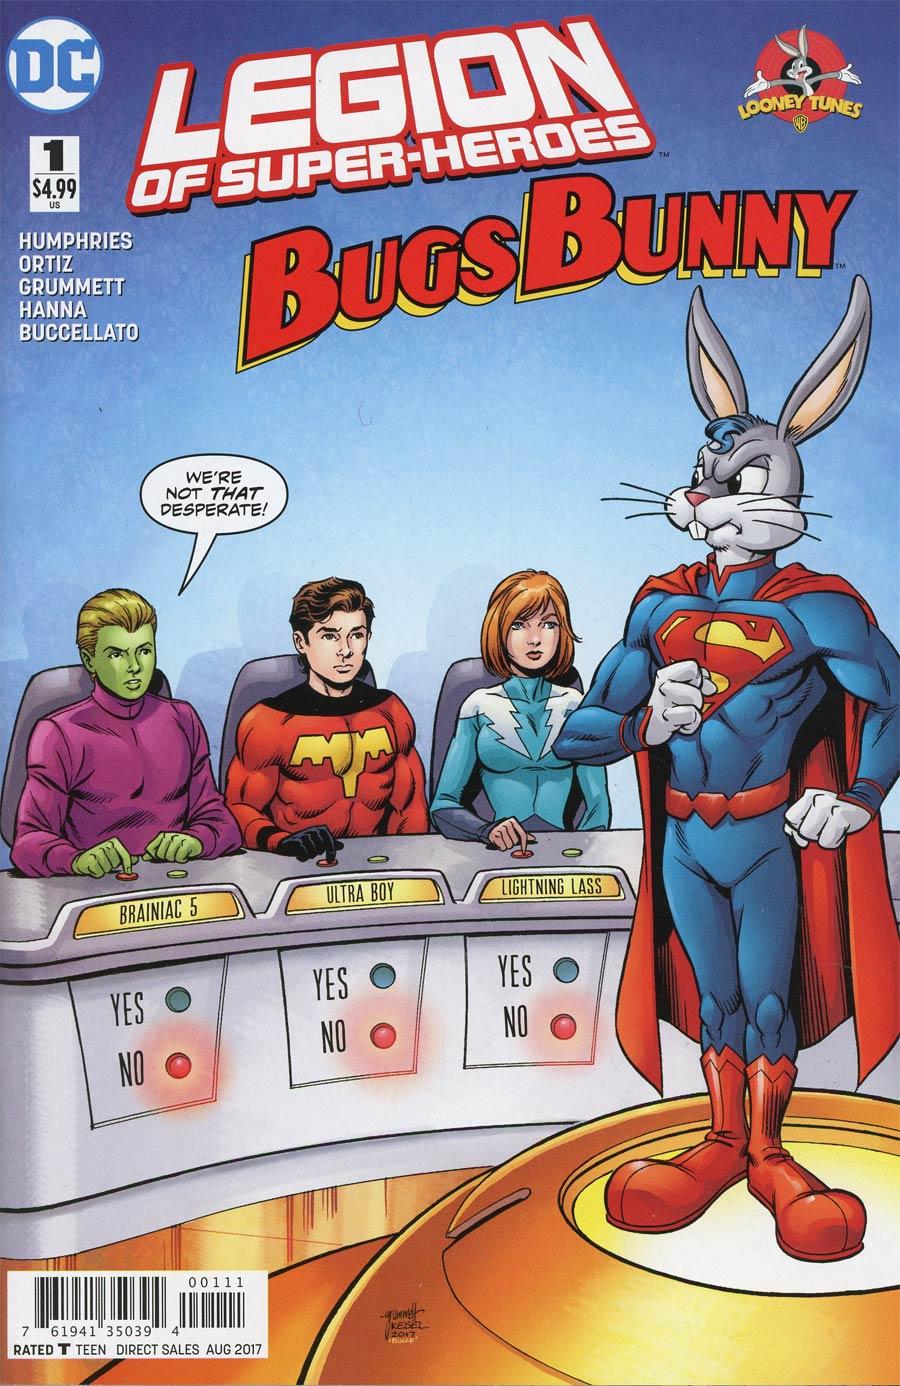 Legion Of Super-Heroes Bugs Bunny Special Vol. 1 #1